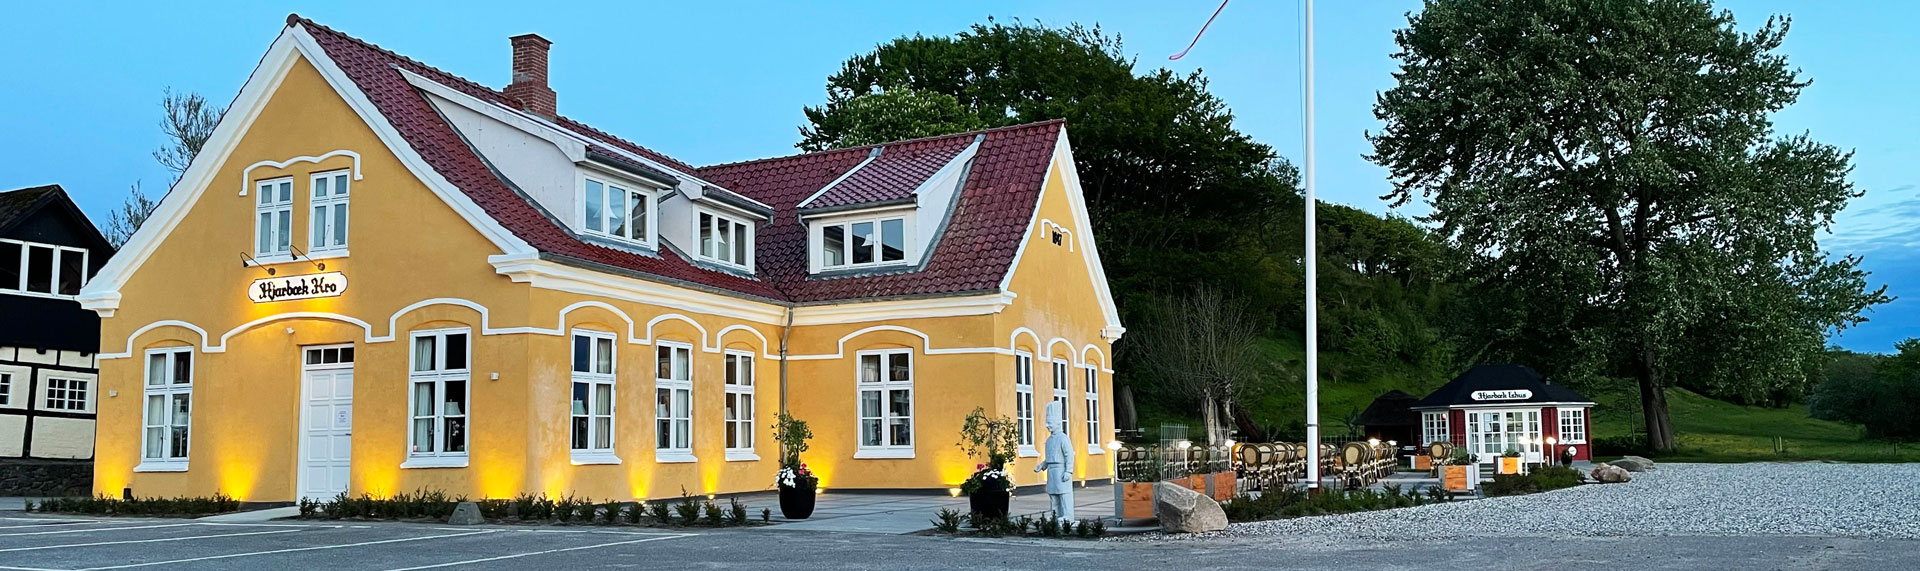 Hjarbæk Kro - restaurant mellem Viborg og Skive